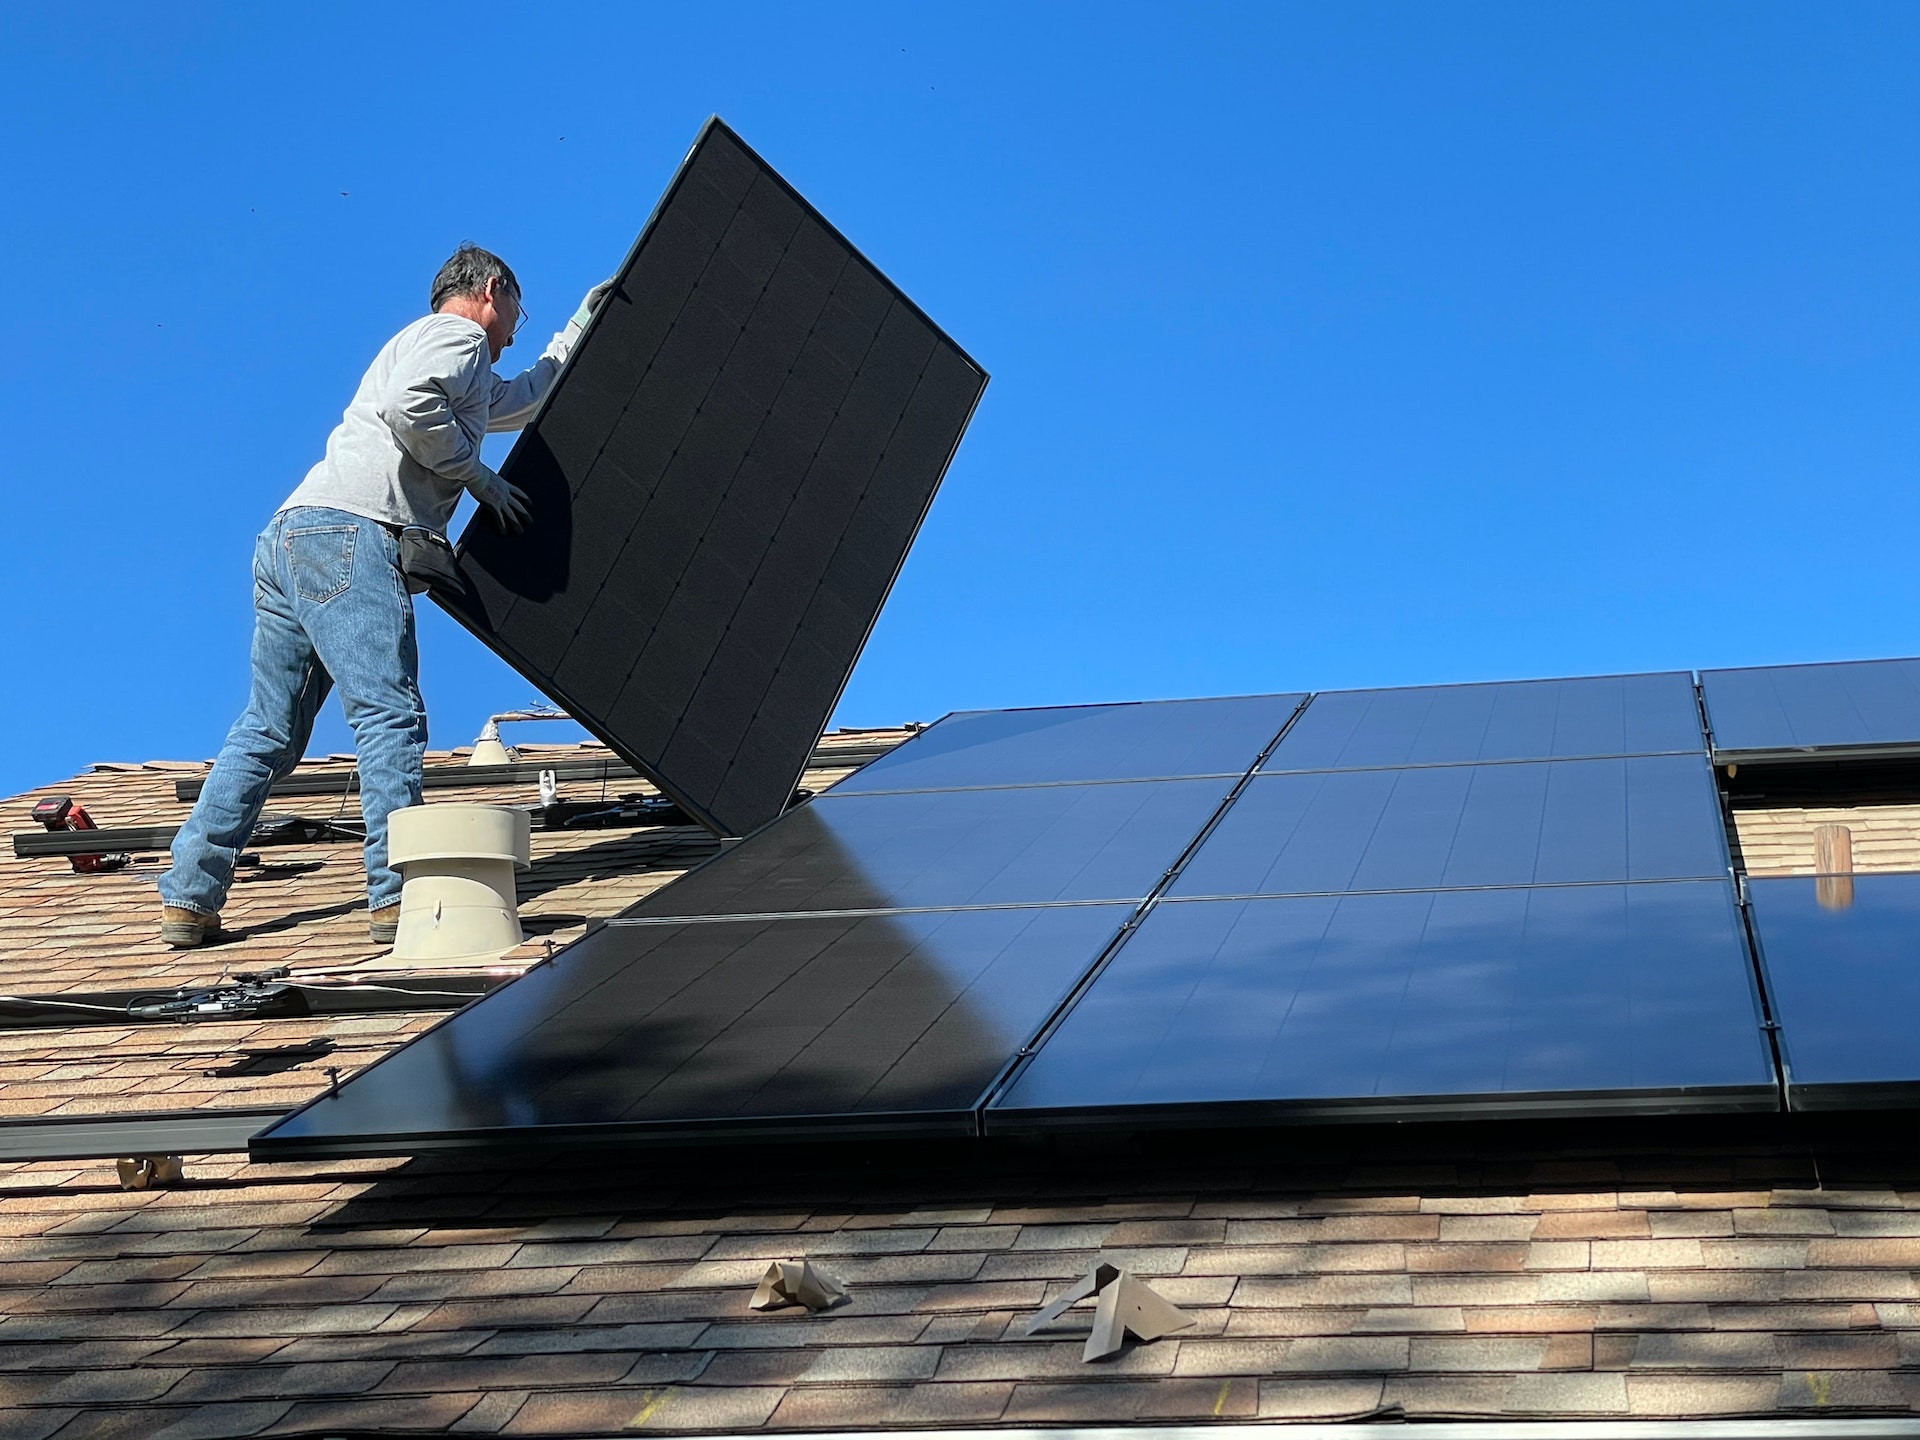 太阳能电池板安装